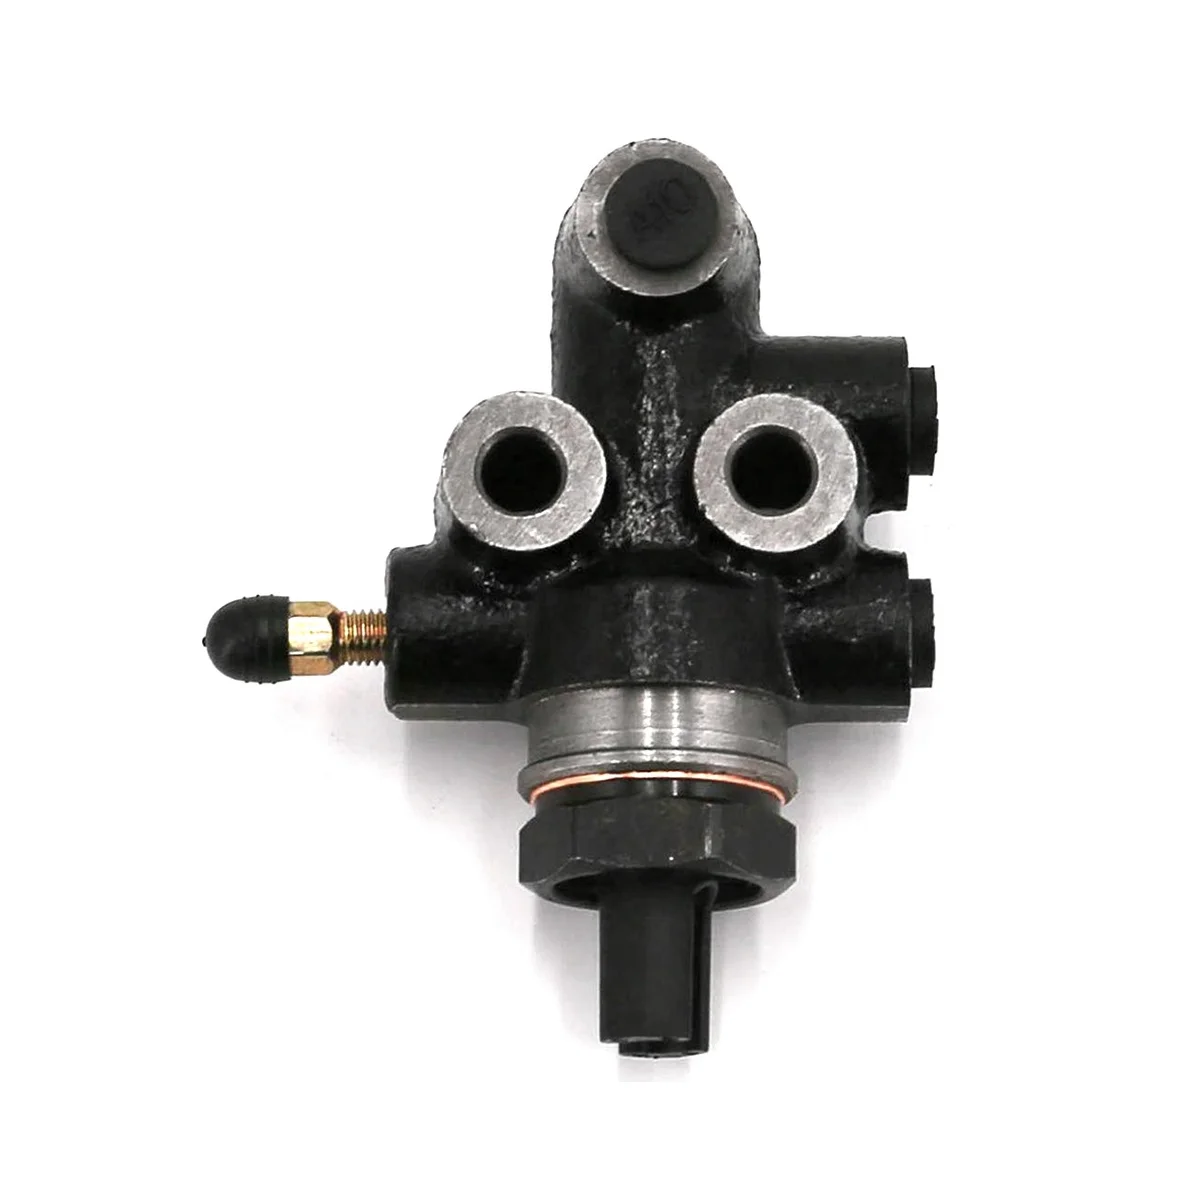 

Хороший чувствительный к тормозной нагрузке пропорциональный клапан для Toyota бренд Land Cruiser Hilux 4Runner MK3 47910-35320 47910-27081 RHD